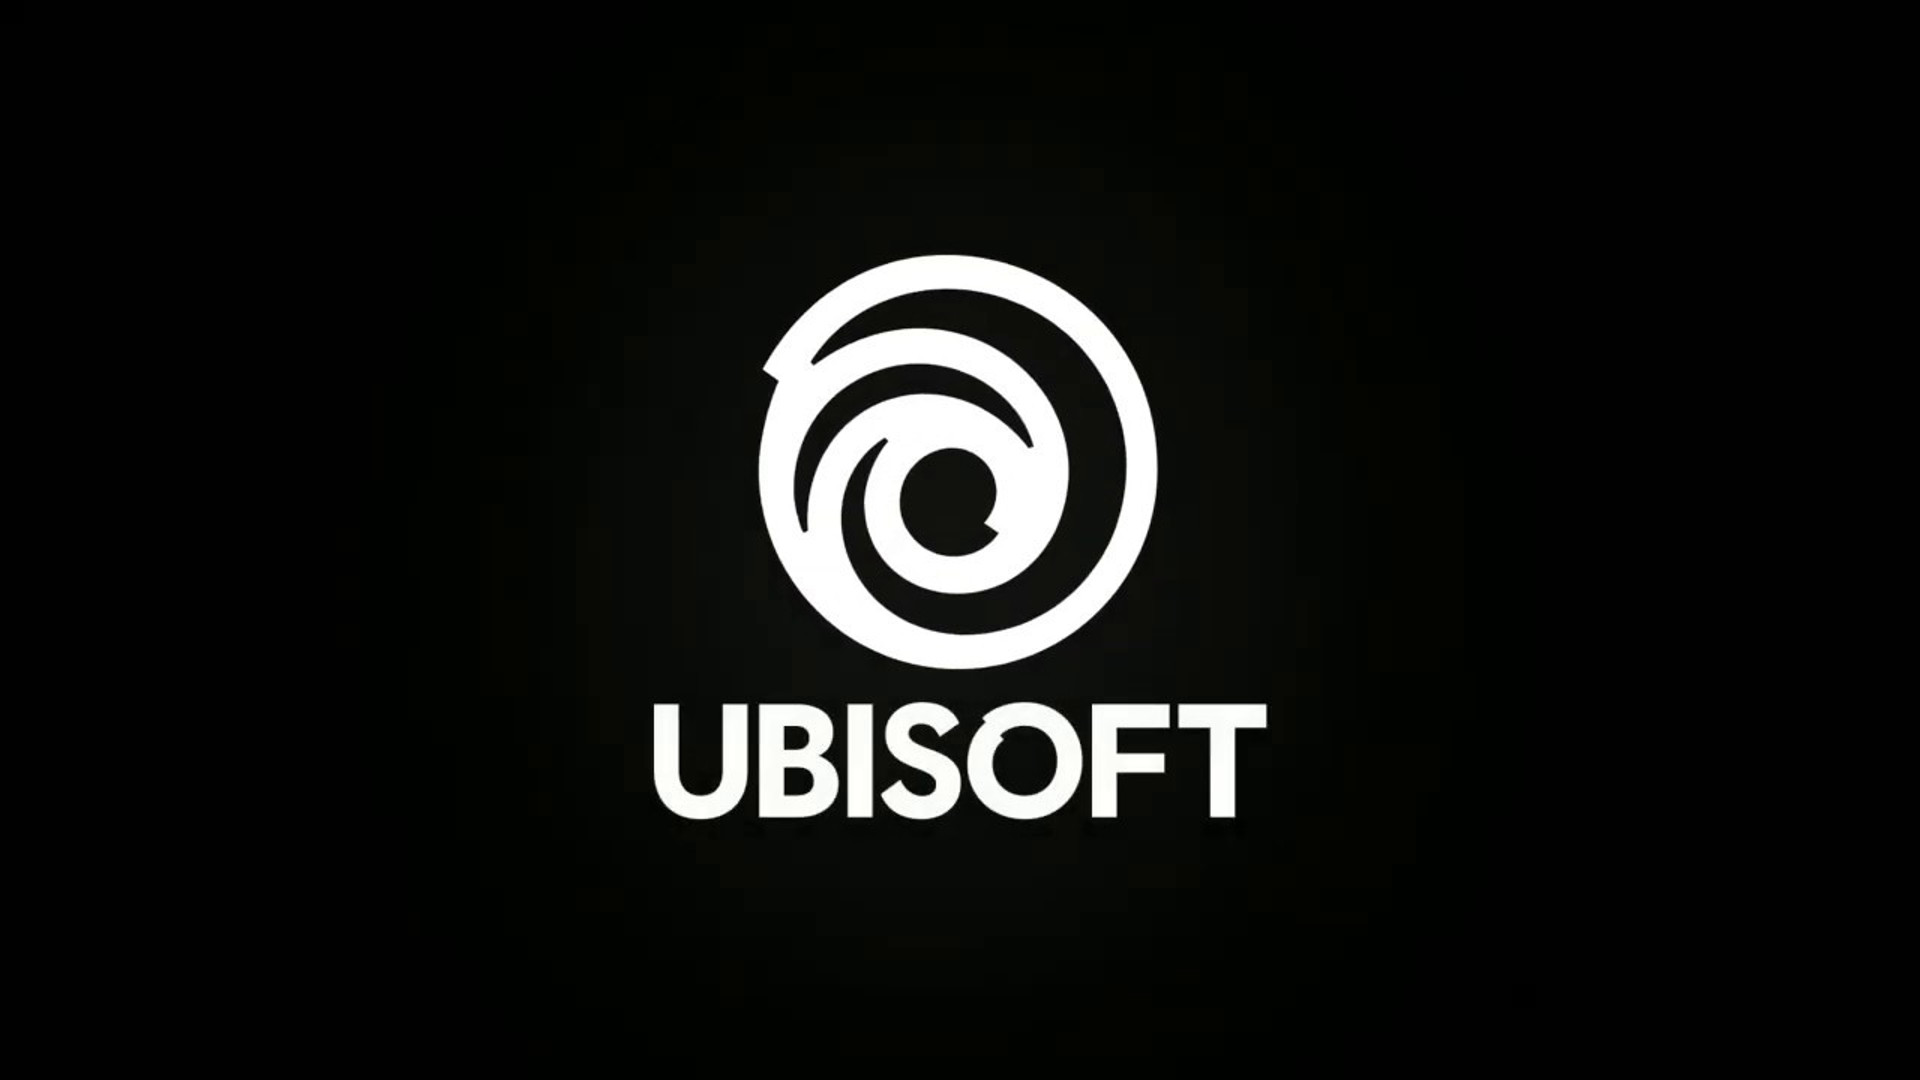 Ubisoft-Direktor antwortet auf offenen Brief von Mitarbeitern und sagt, Studio habe "im letzten Jahr signifikante Fortschritte gemacht"